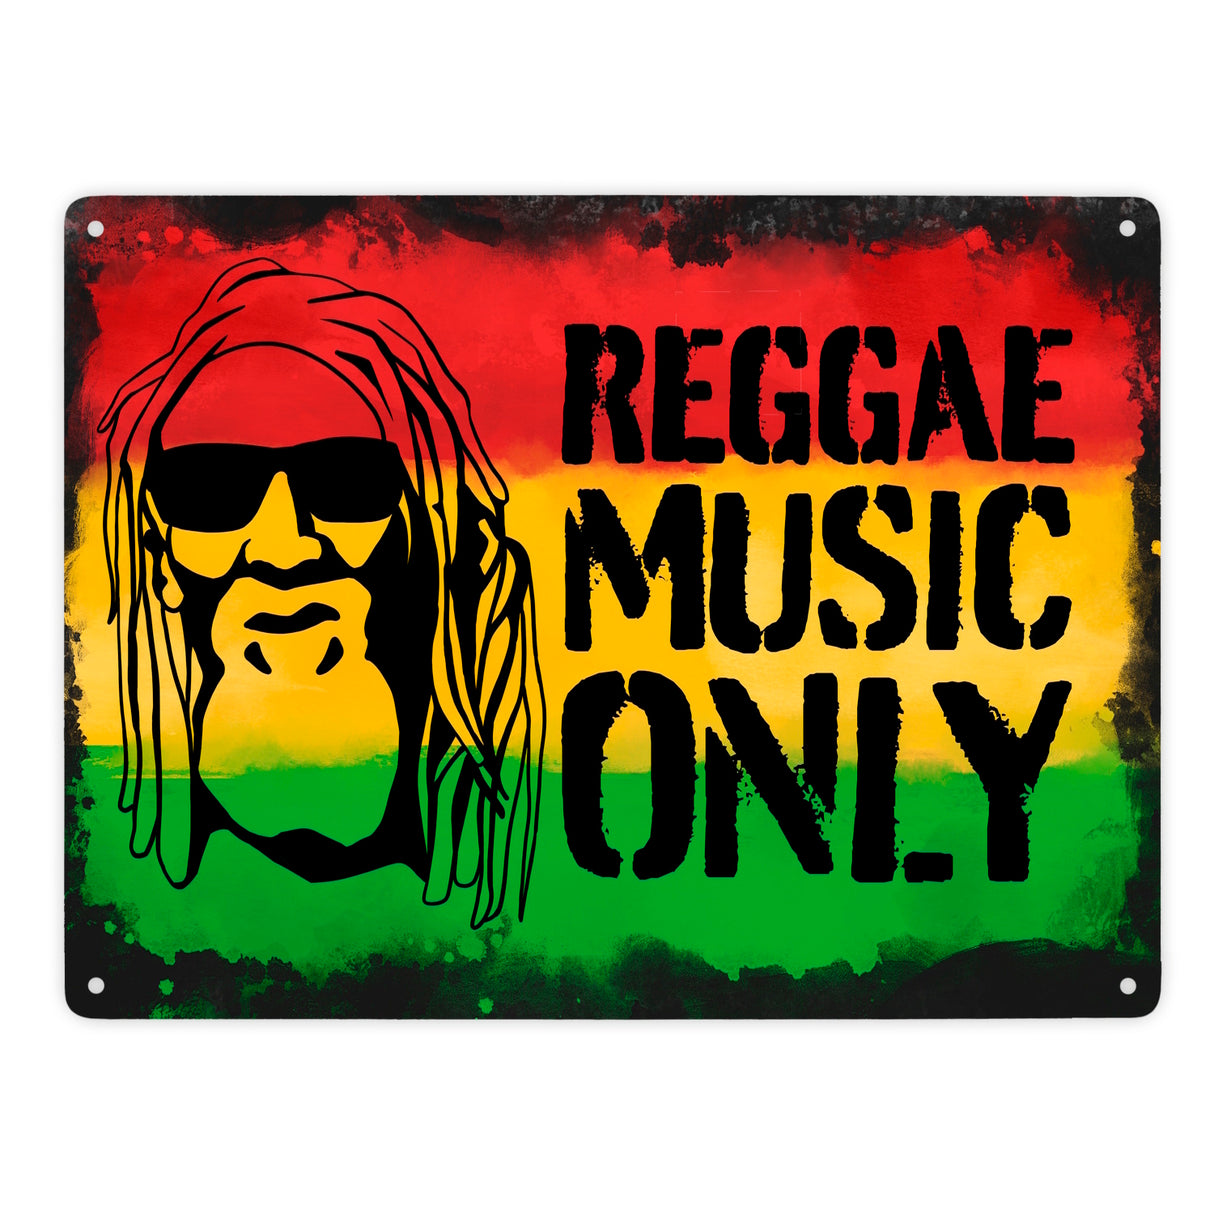 Reggae Music Only Metallschild mit Rastafarigesicht